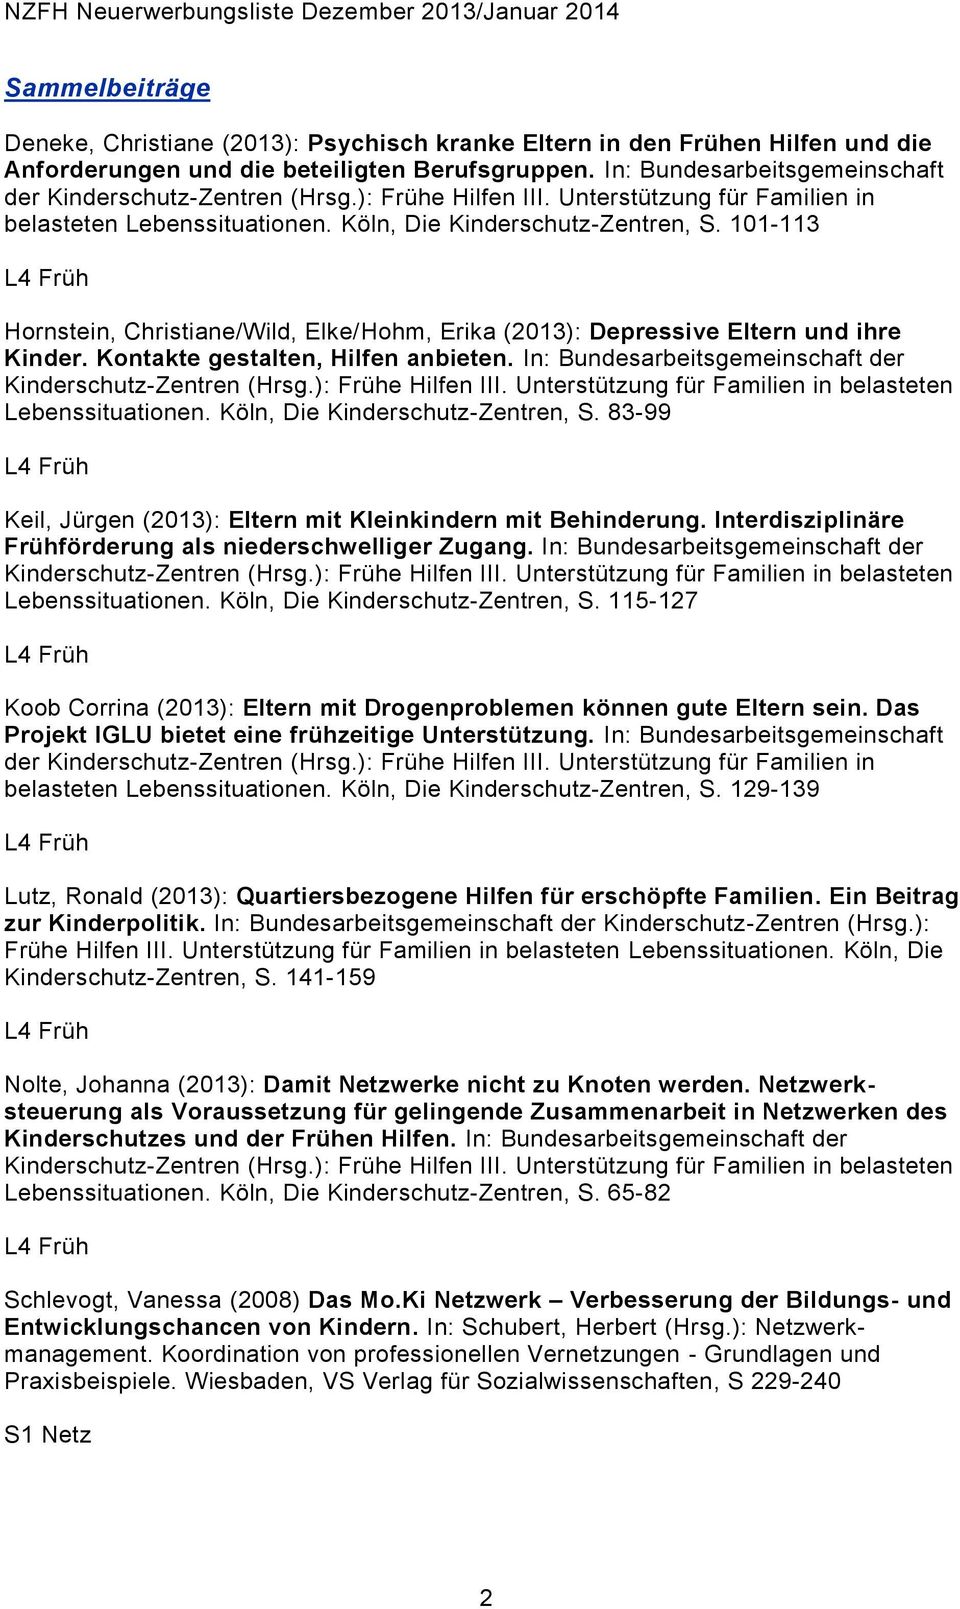 101-113 Hornstein, Christiane/Wild, Elke/Hohm, Erika (2013): Depressive Eltern und ihre Kinder. Kontakte gestalten, Hilfen anbieten. In: Bundesarbeitsgemeinschaft der Lebenssituationen.